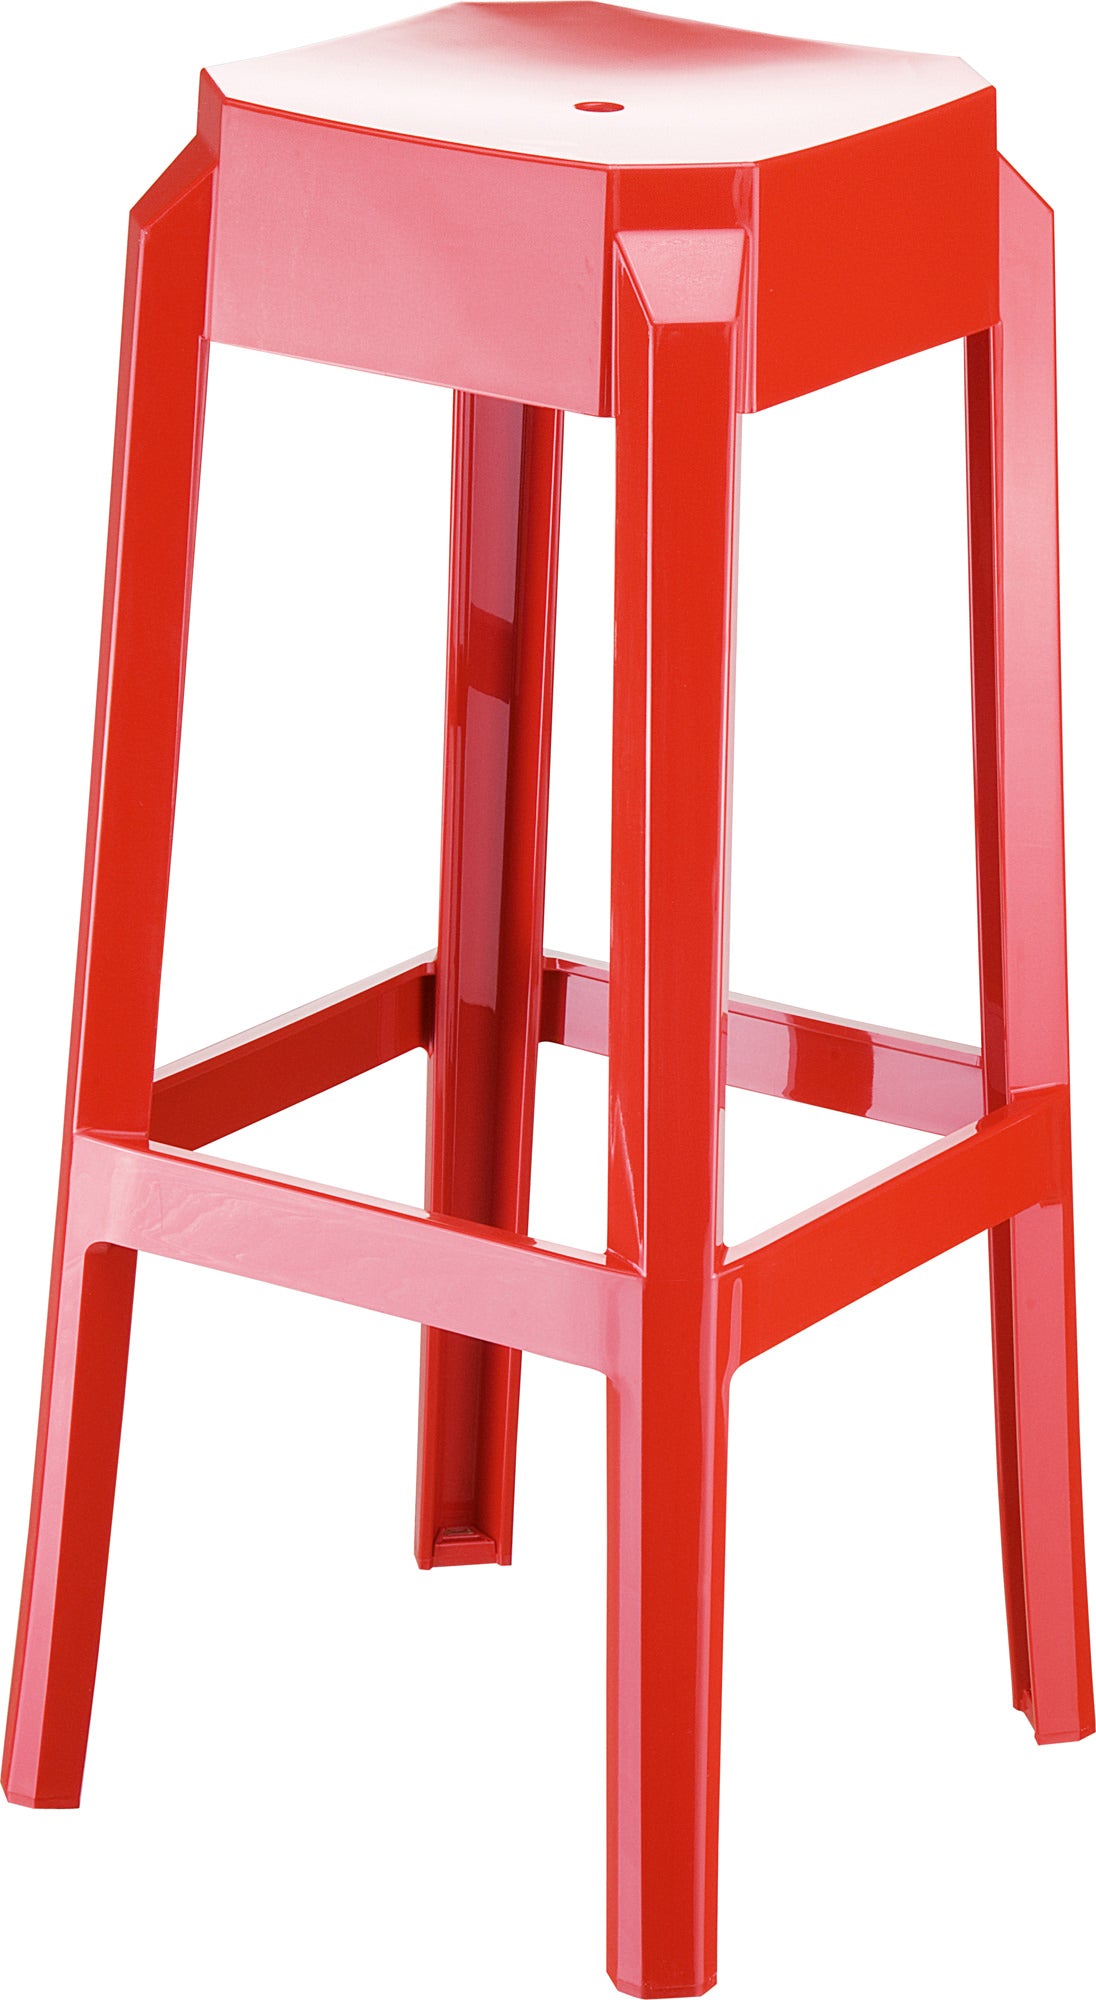 Billede af Trendy barstol i 100% polycarbonat, industrielt look, fås i flere farver